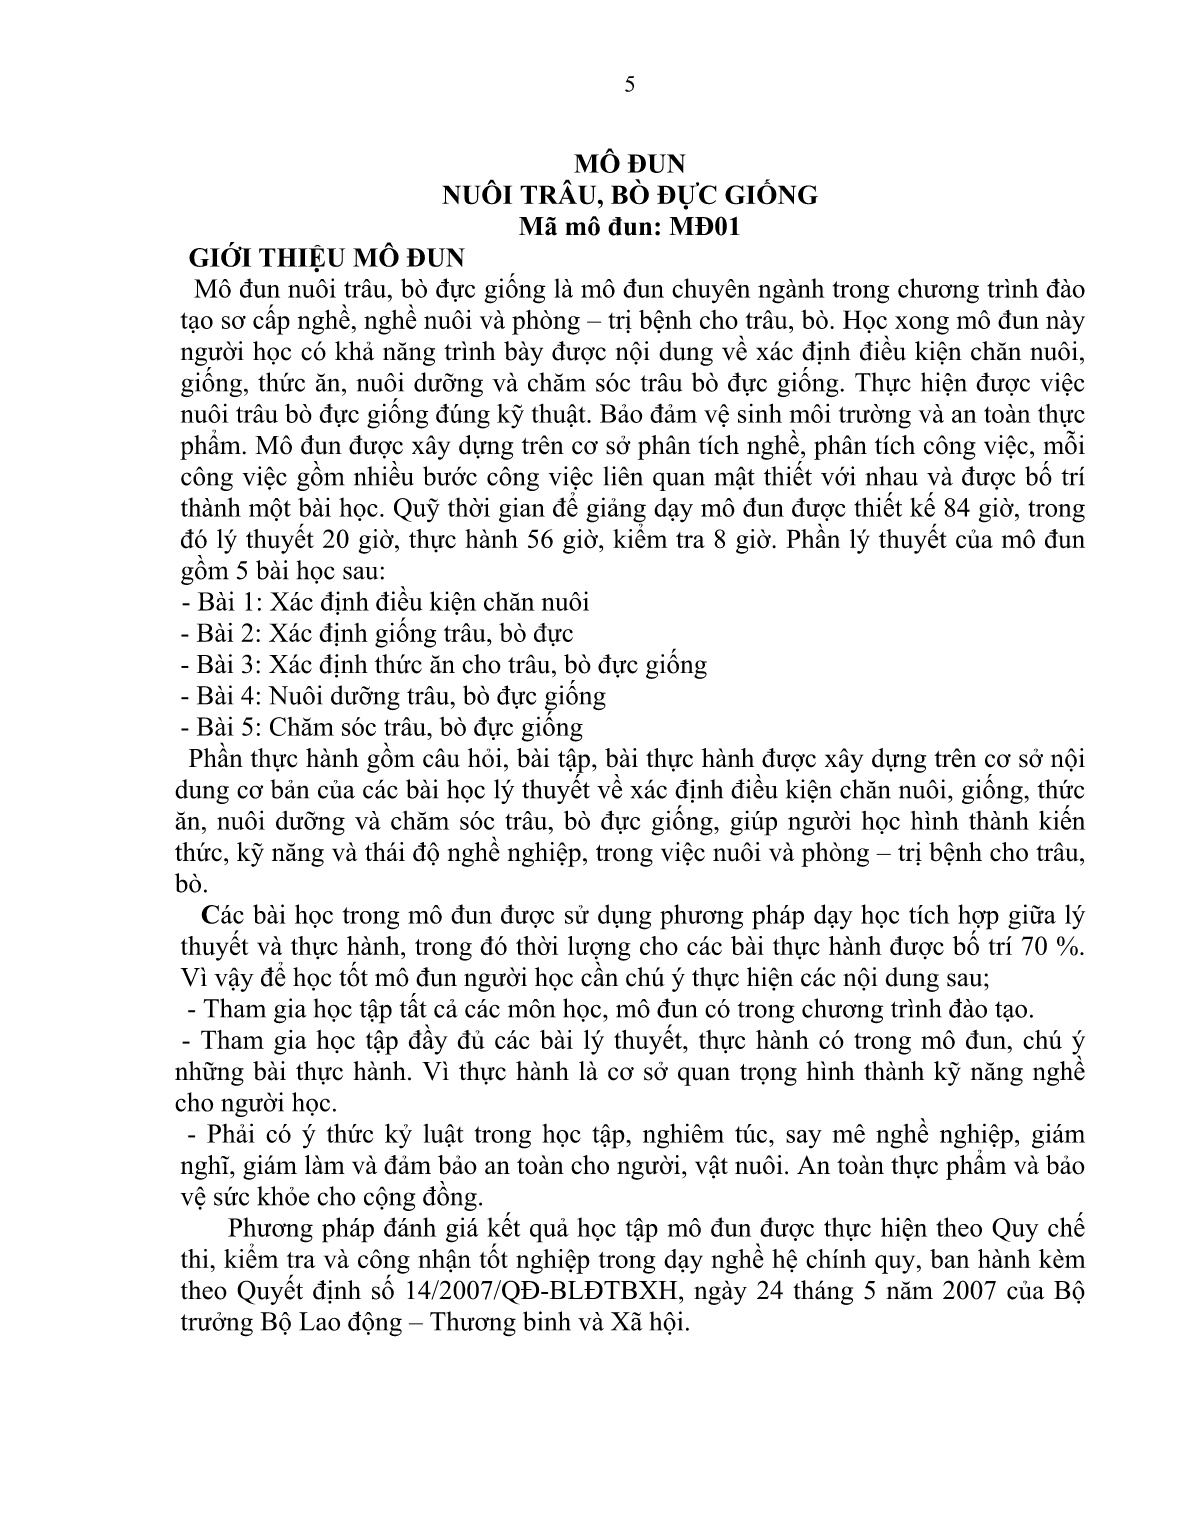 Giáo trình mô đun Nuôi trâu, bò đực giống (Trình độ: Sơ cấp nghề) trang 6